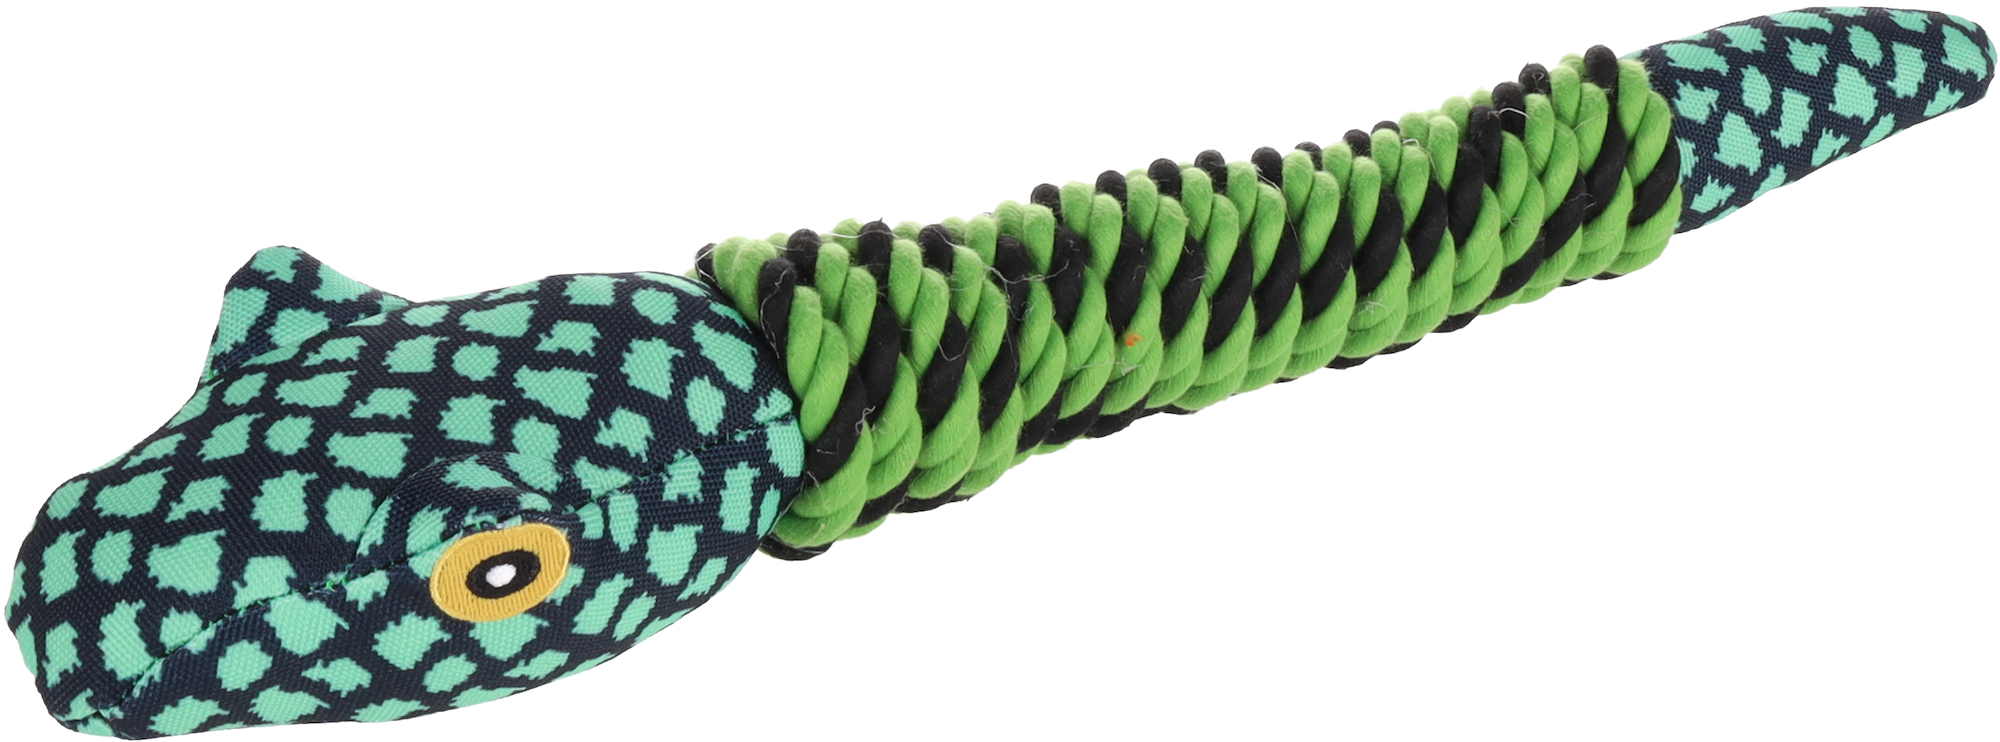 Monsjo Snake extrem widerstandsfähiges Spielzeug – 44 cm